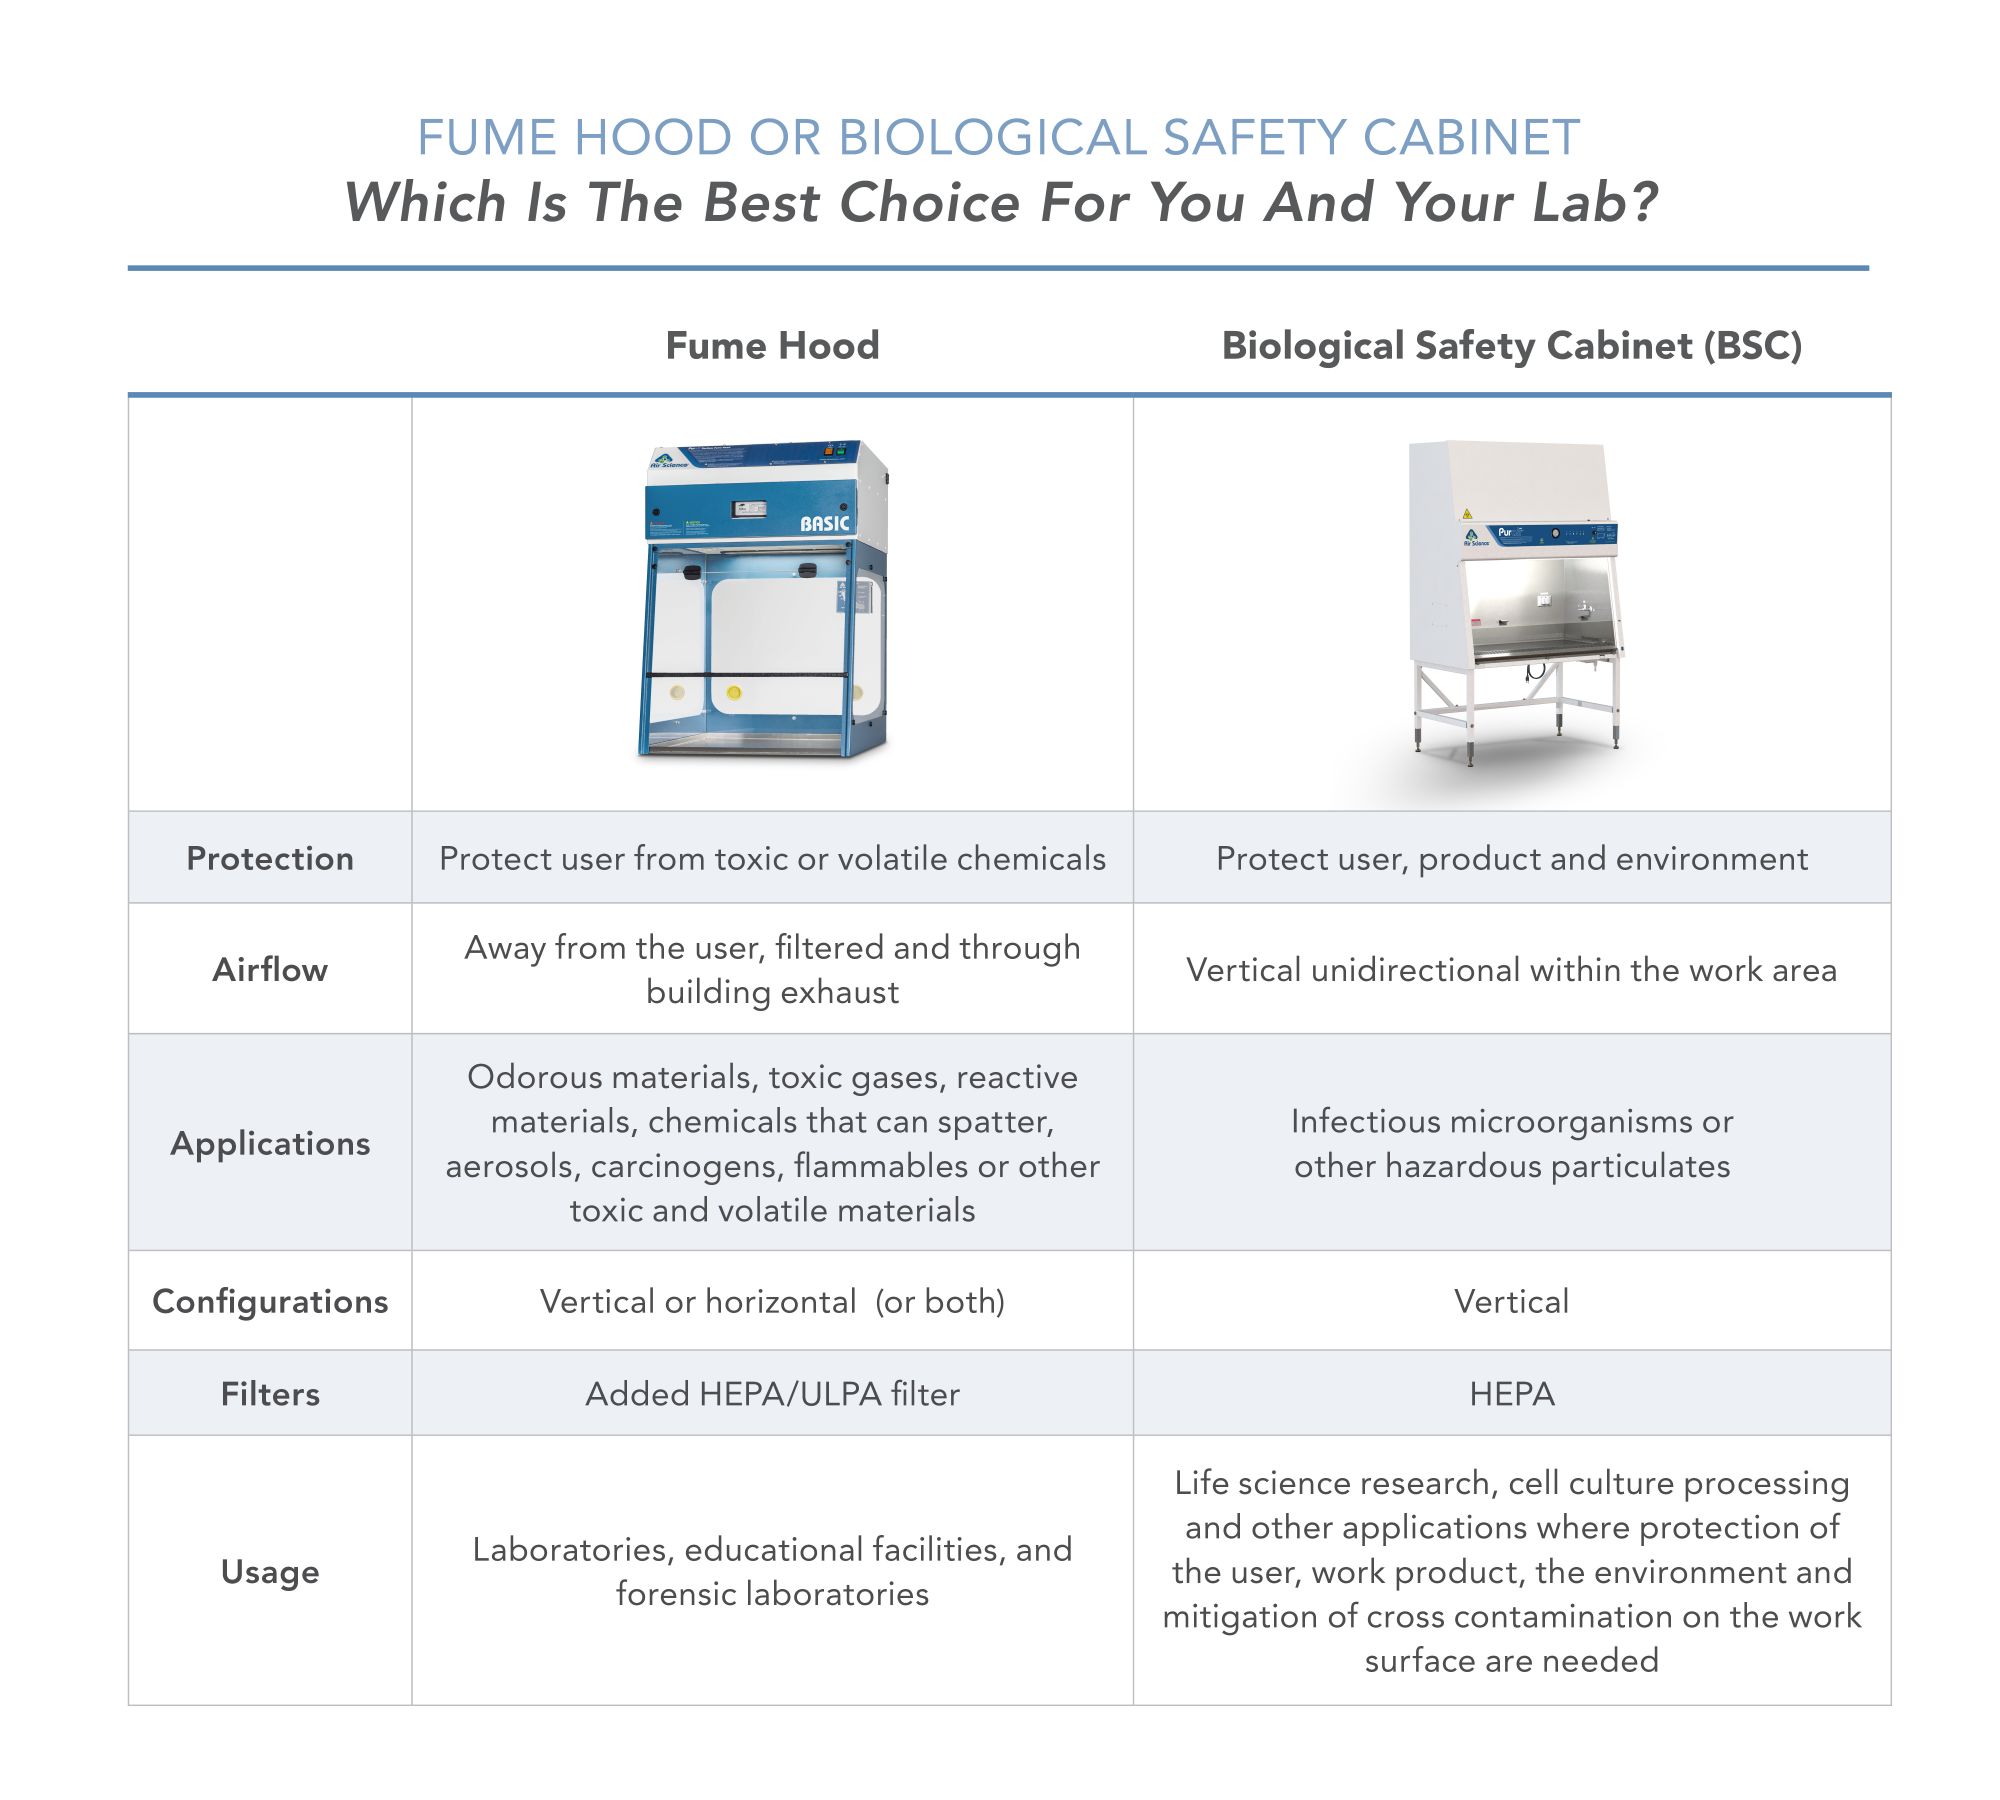 Biological Safety Cabinet vs. Fume Hood